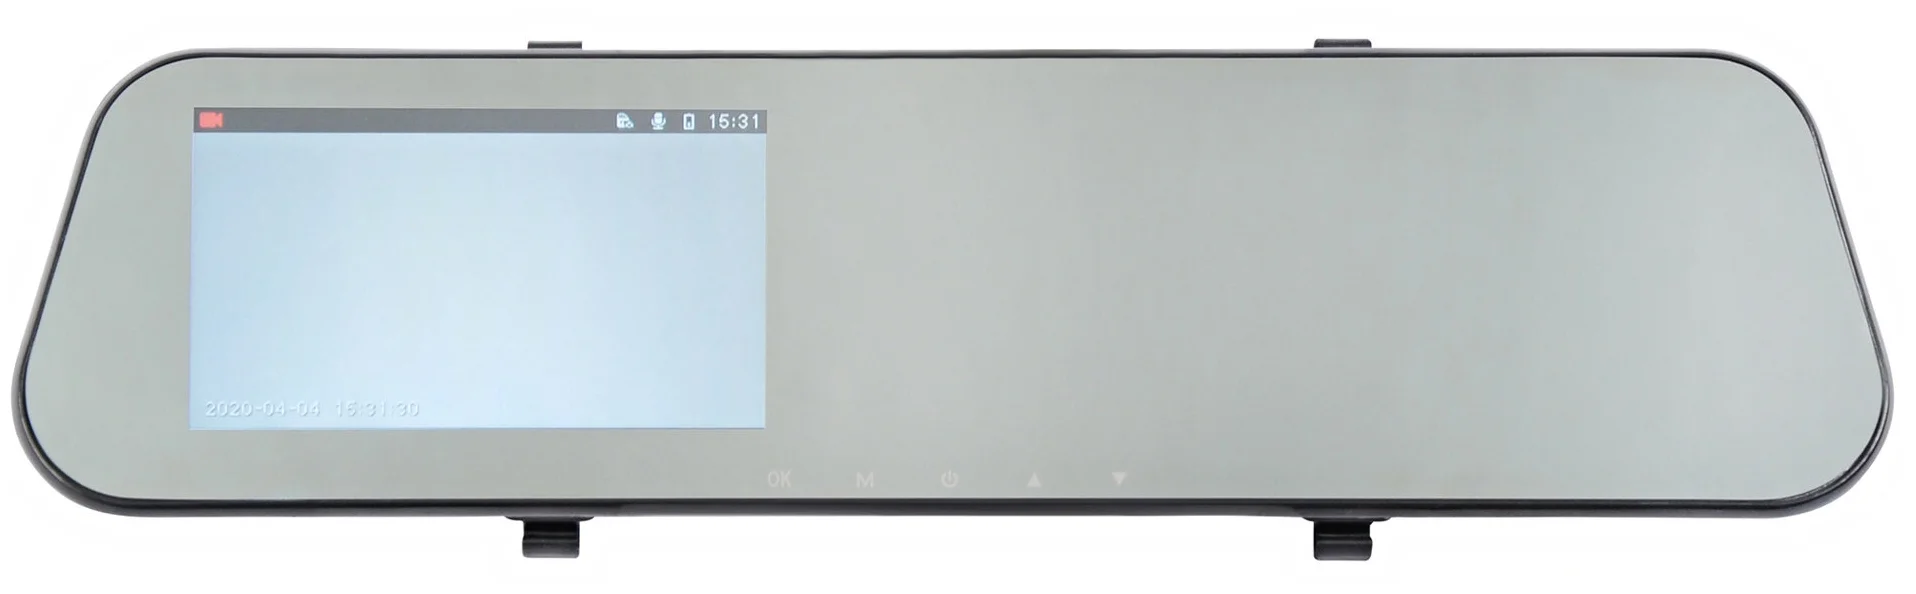 DIGMA FreeDrive 114 - экран 4.3" с разрешением 480x272